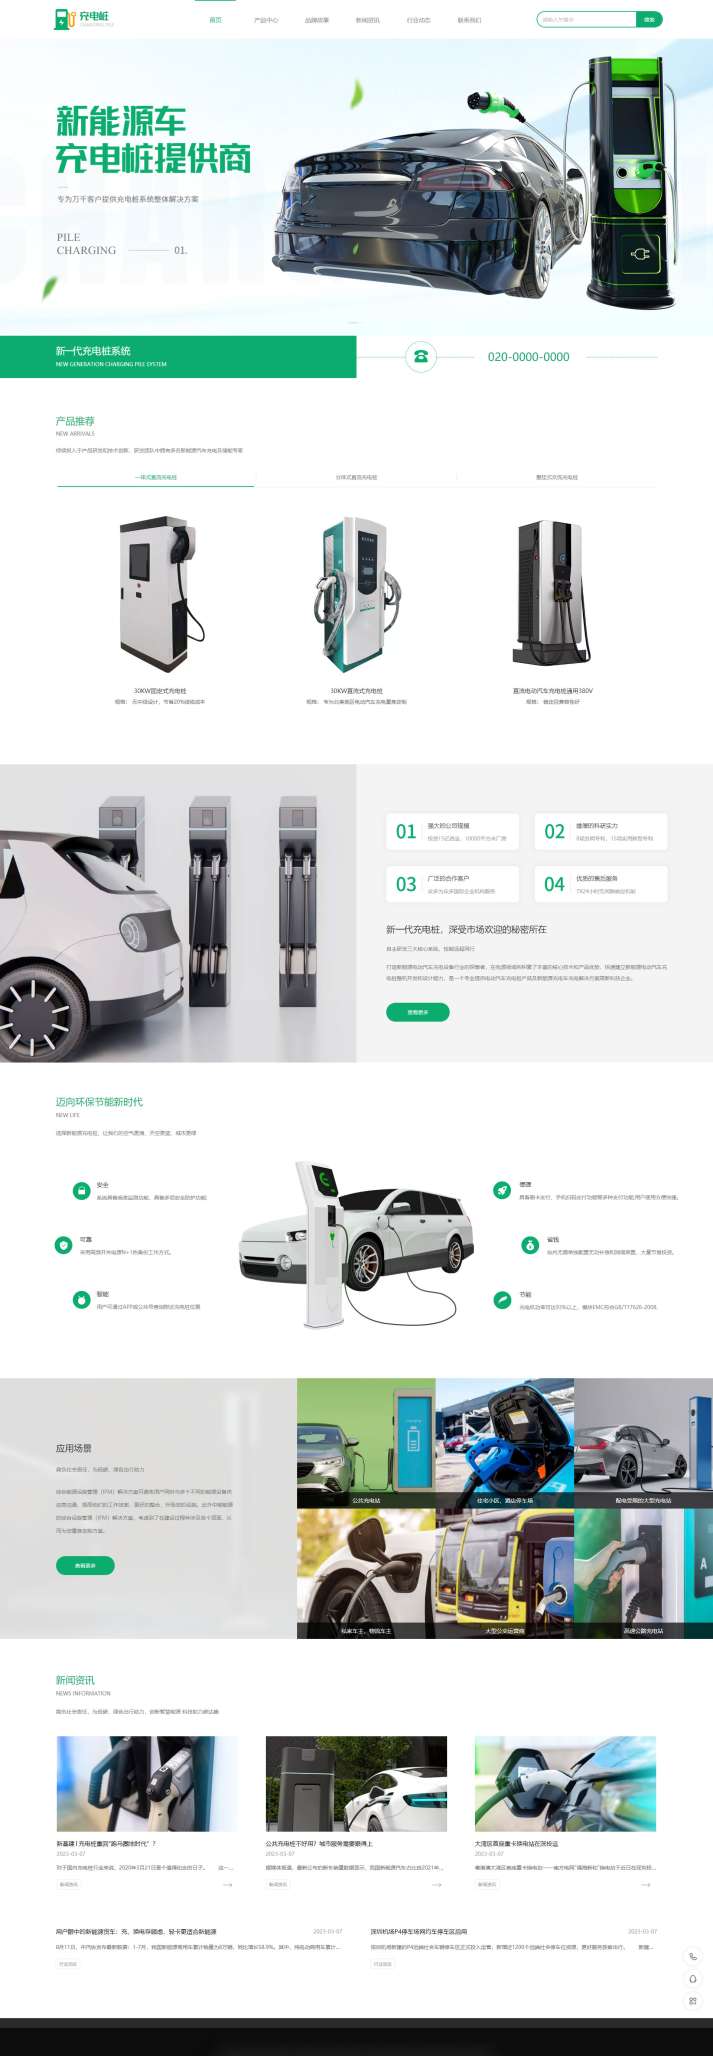 高端汽车充电桩设备企业网站模板